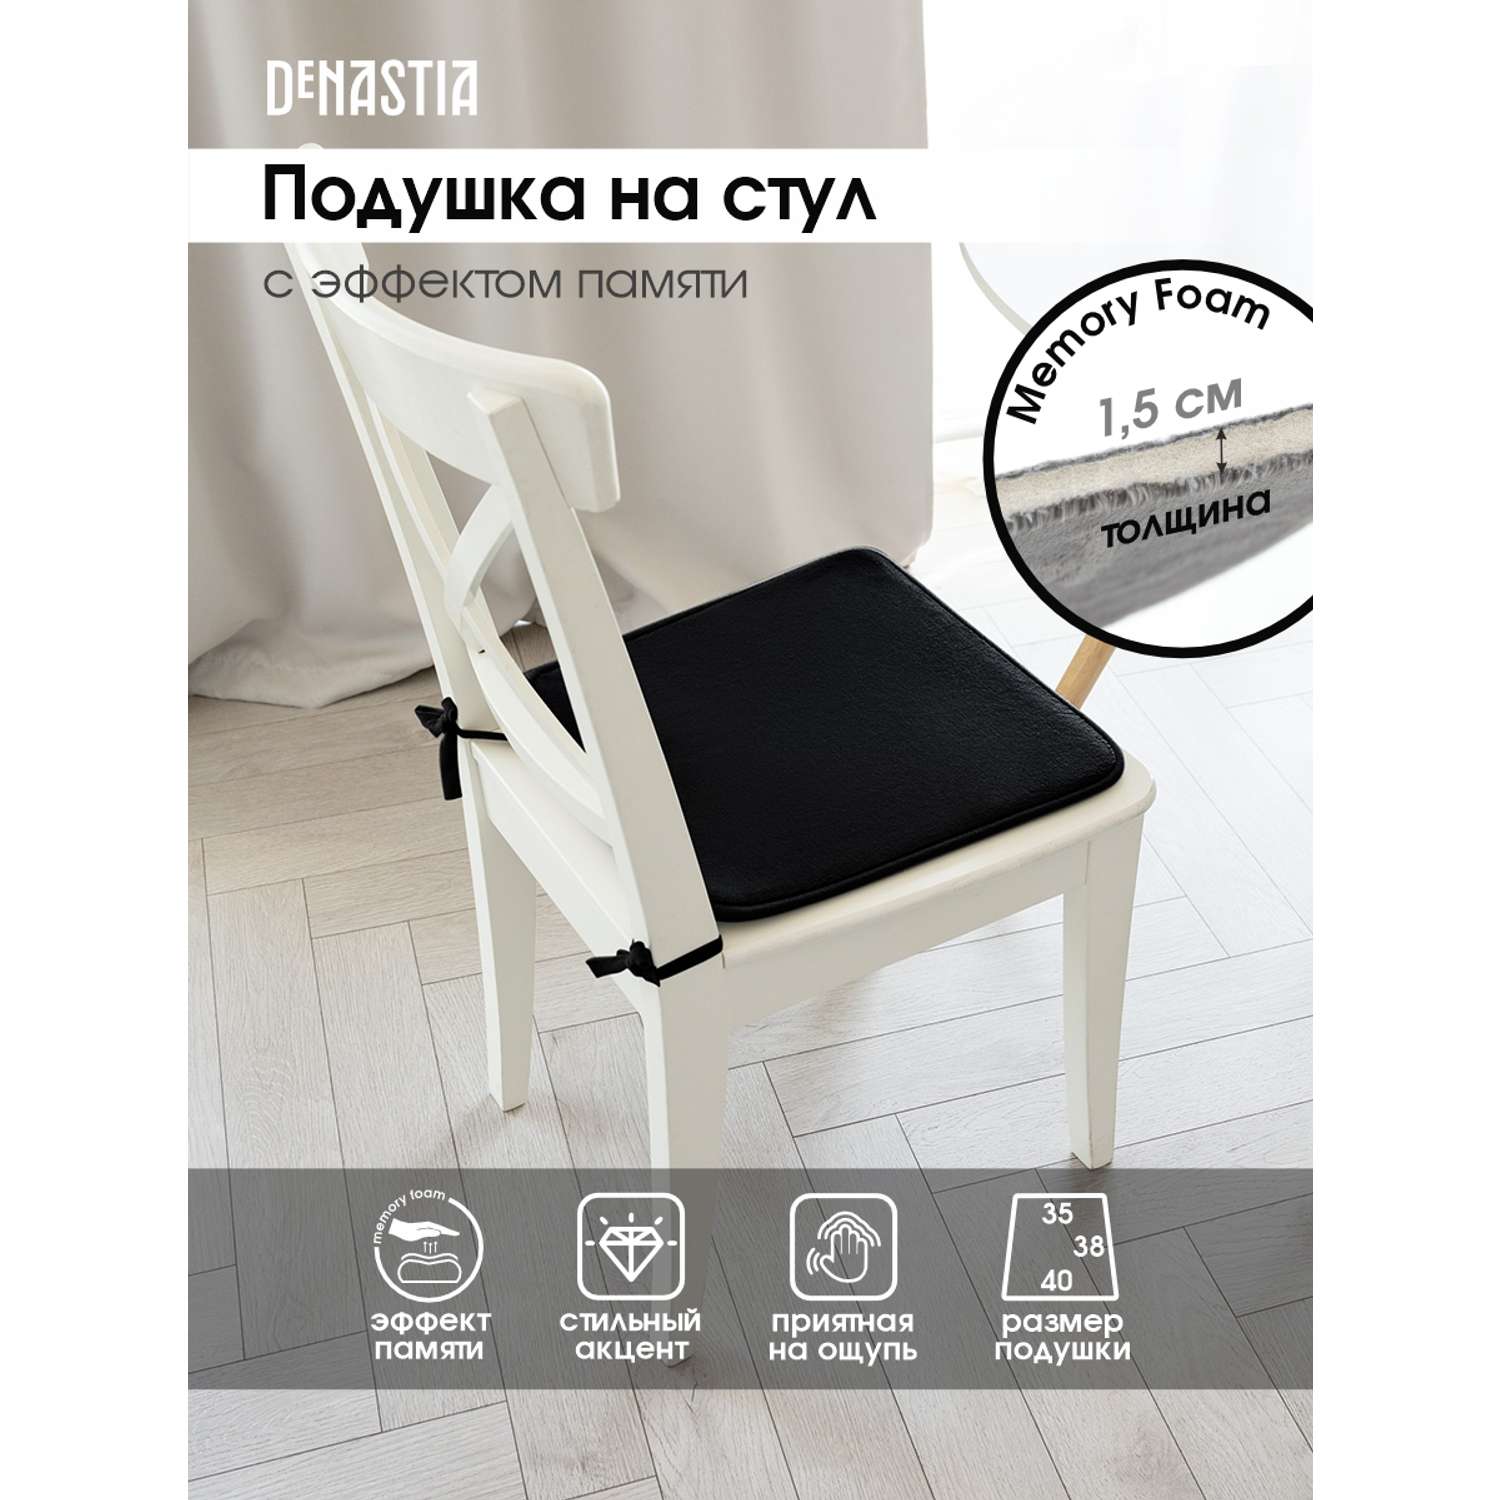 Подушка на стул DeNASTIA с эффектом памяти 40x35x38 см чёрный P111170 - фото 2